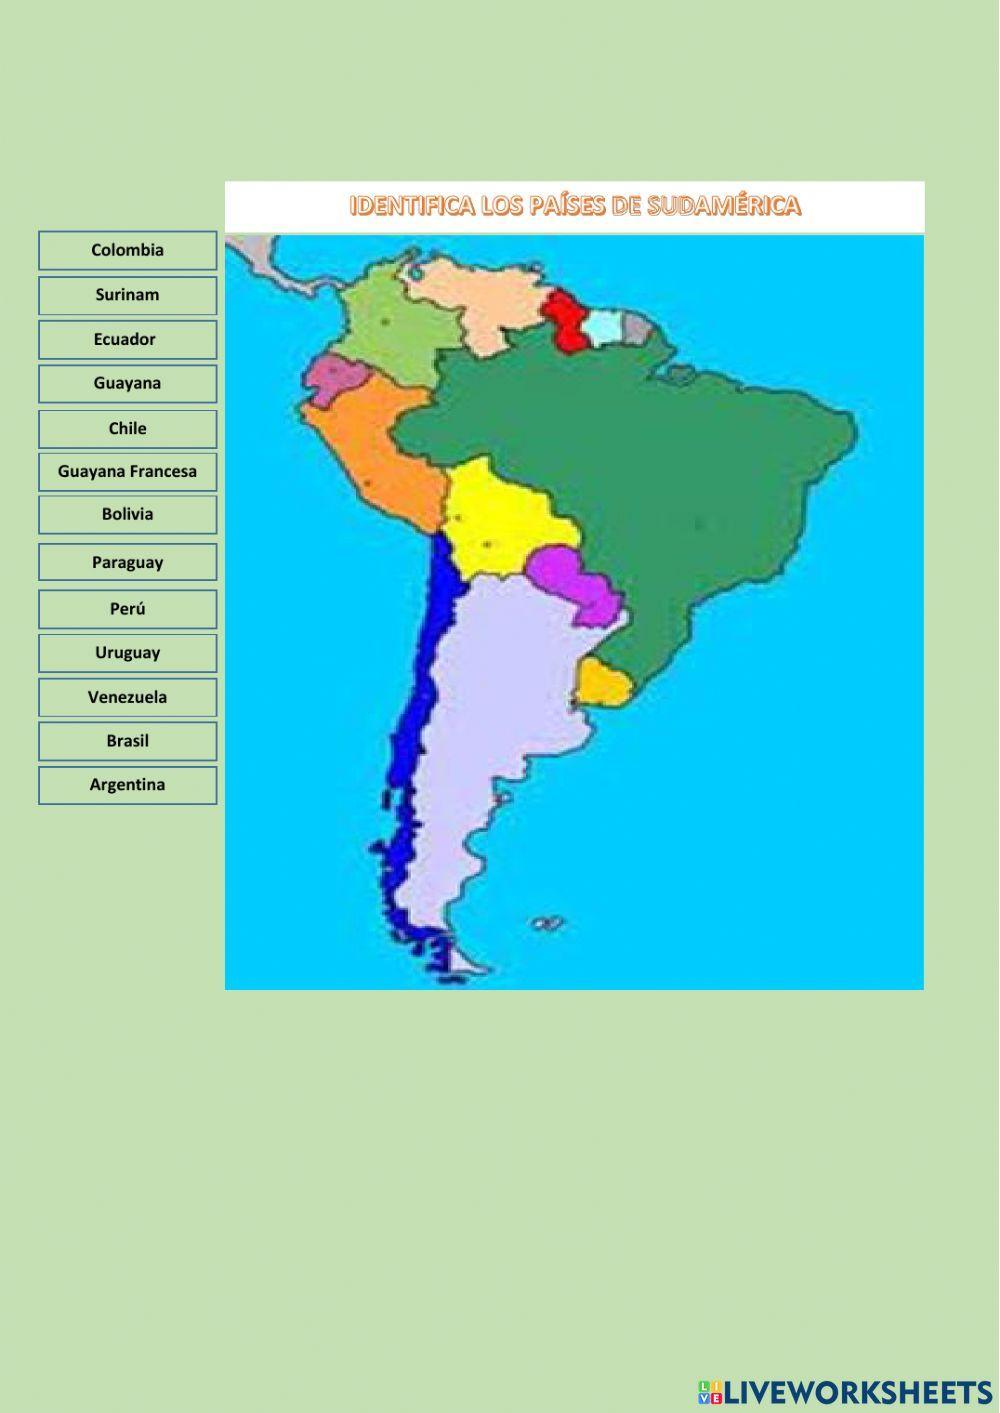 Piases de América del sur